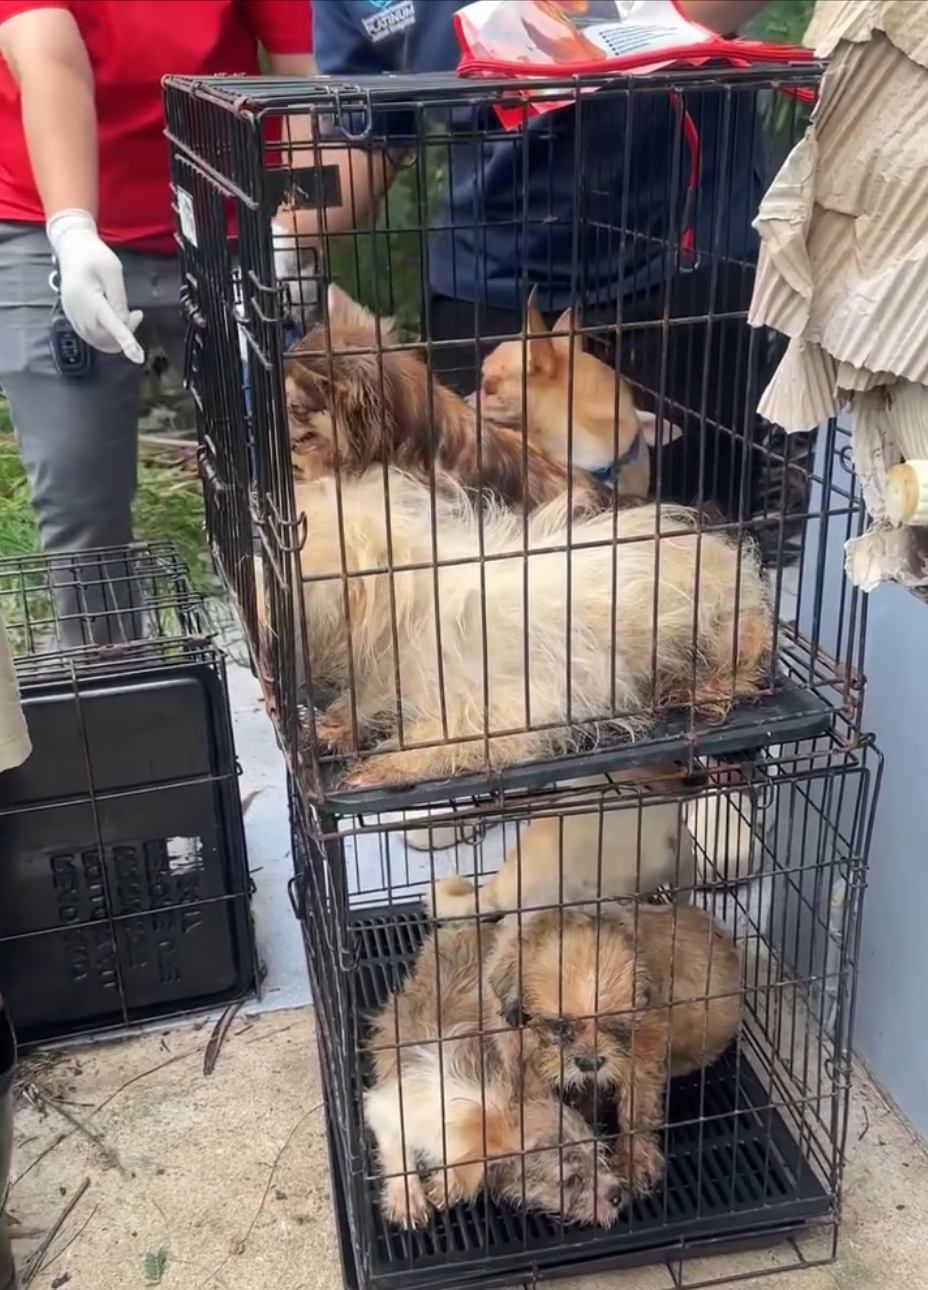 救援人员找匀全屋救出约30只狗。 The Voice Foundation